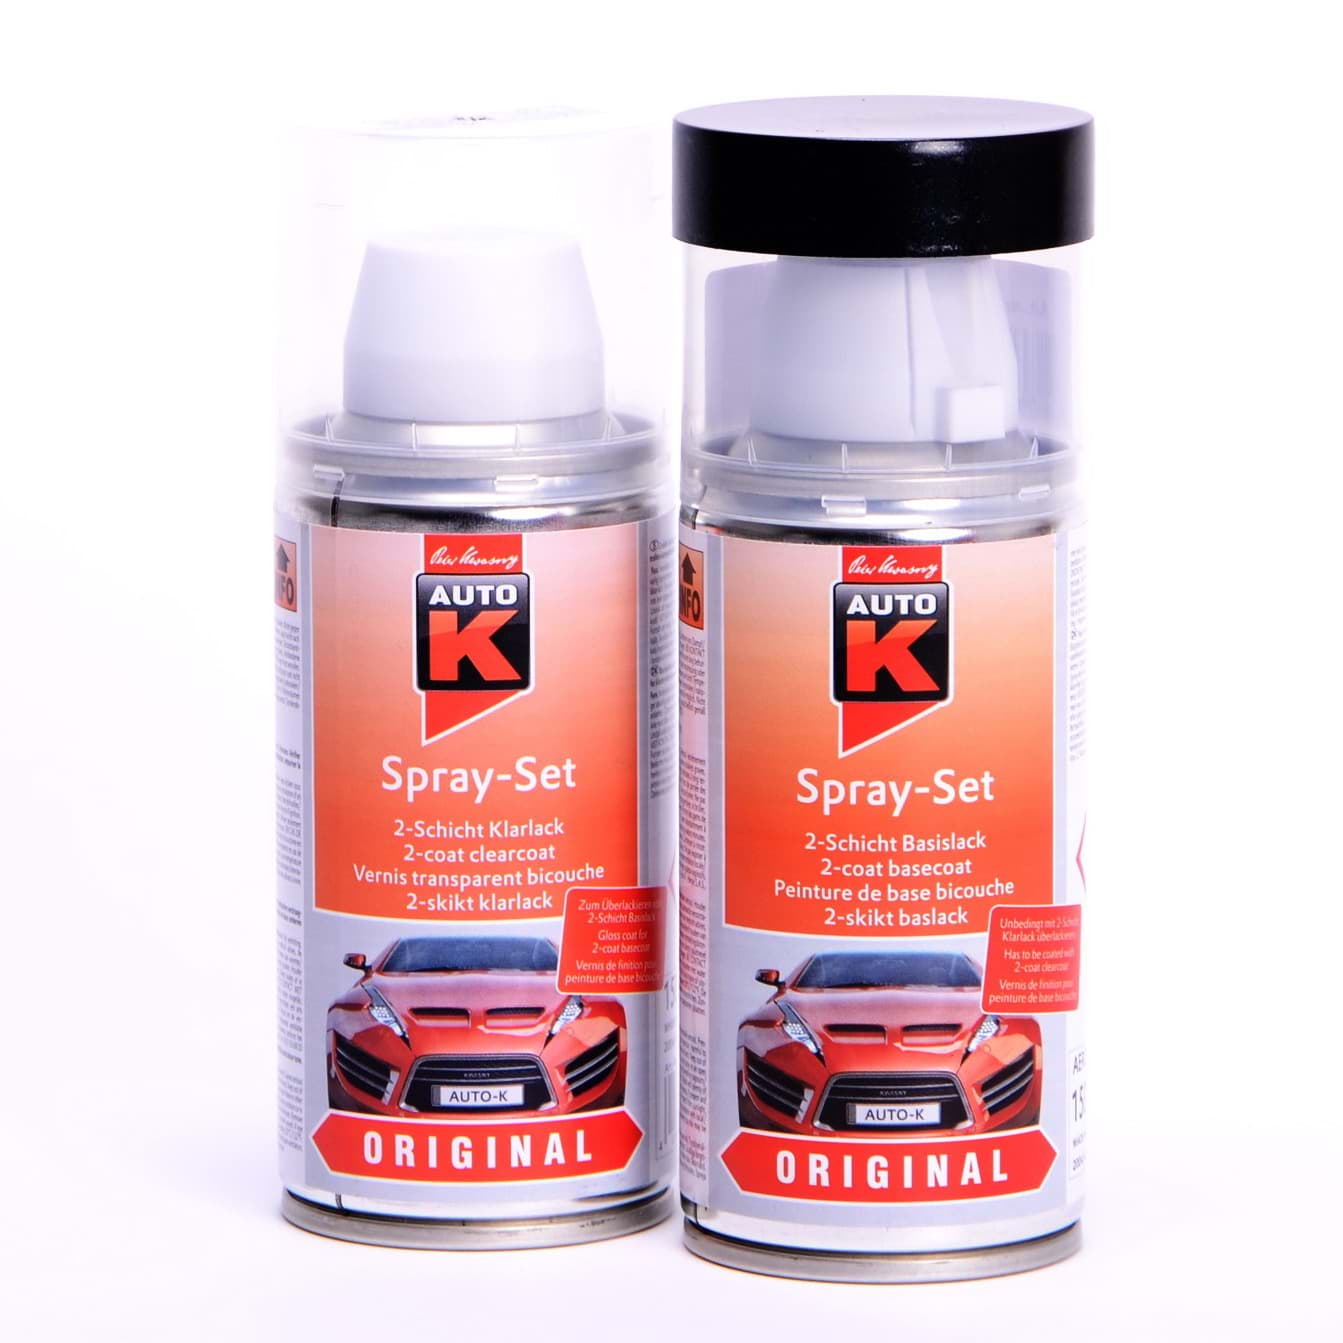 Afbeelding van Auto-K Spray-Set Autolack für Volkswagen, VW, Audi LC9X Deepblack perl met 20088